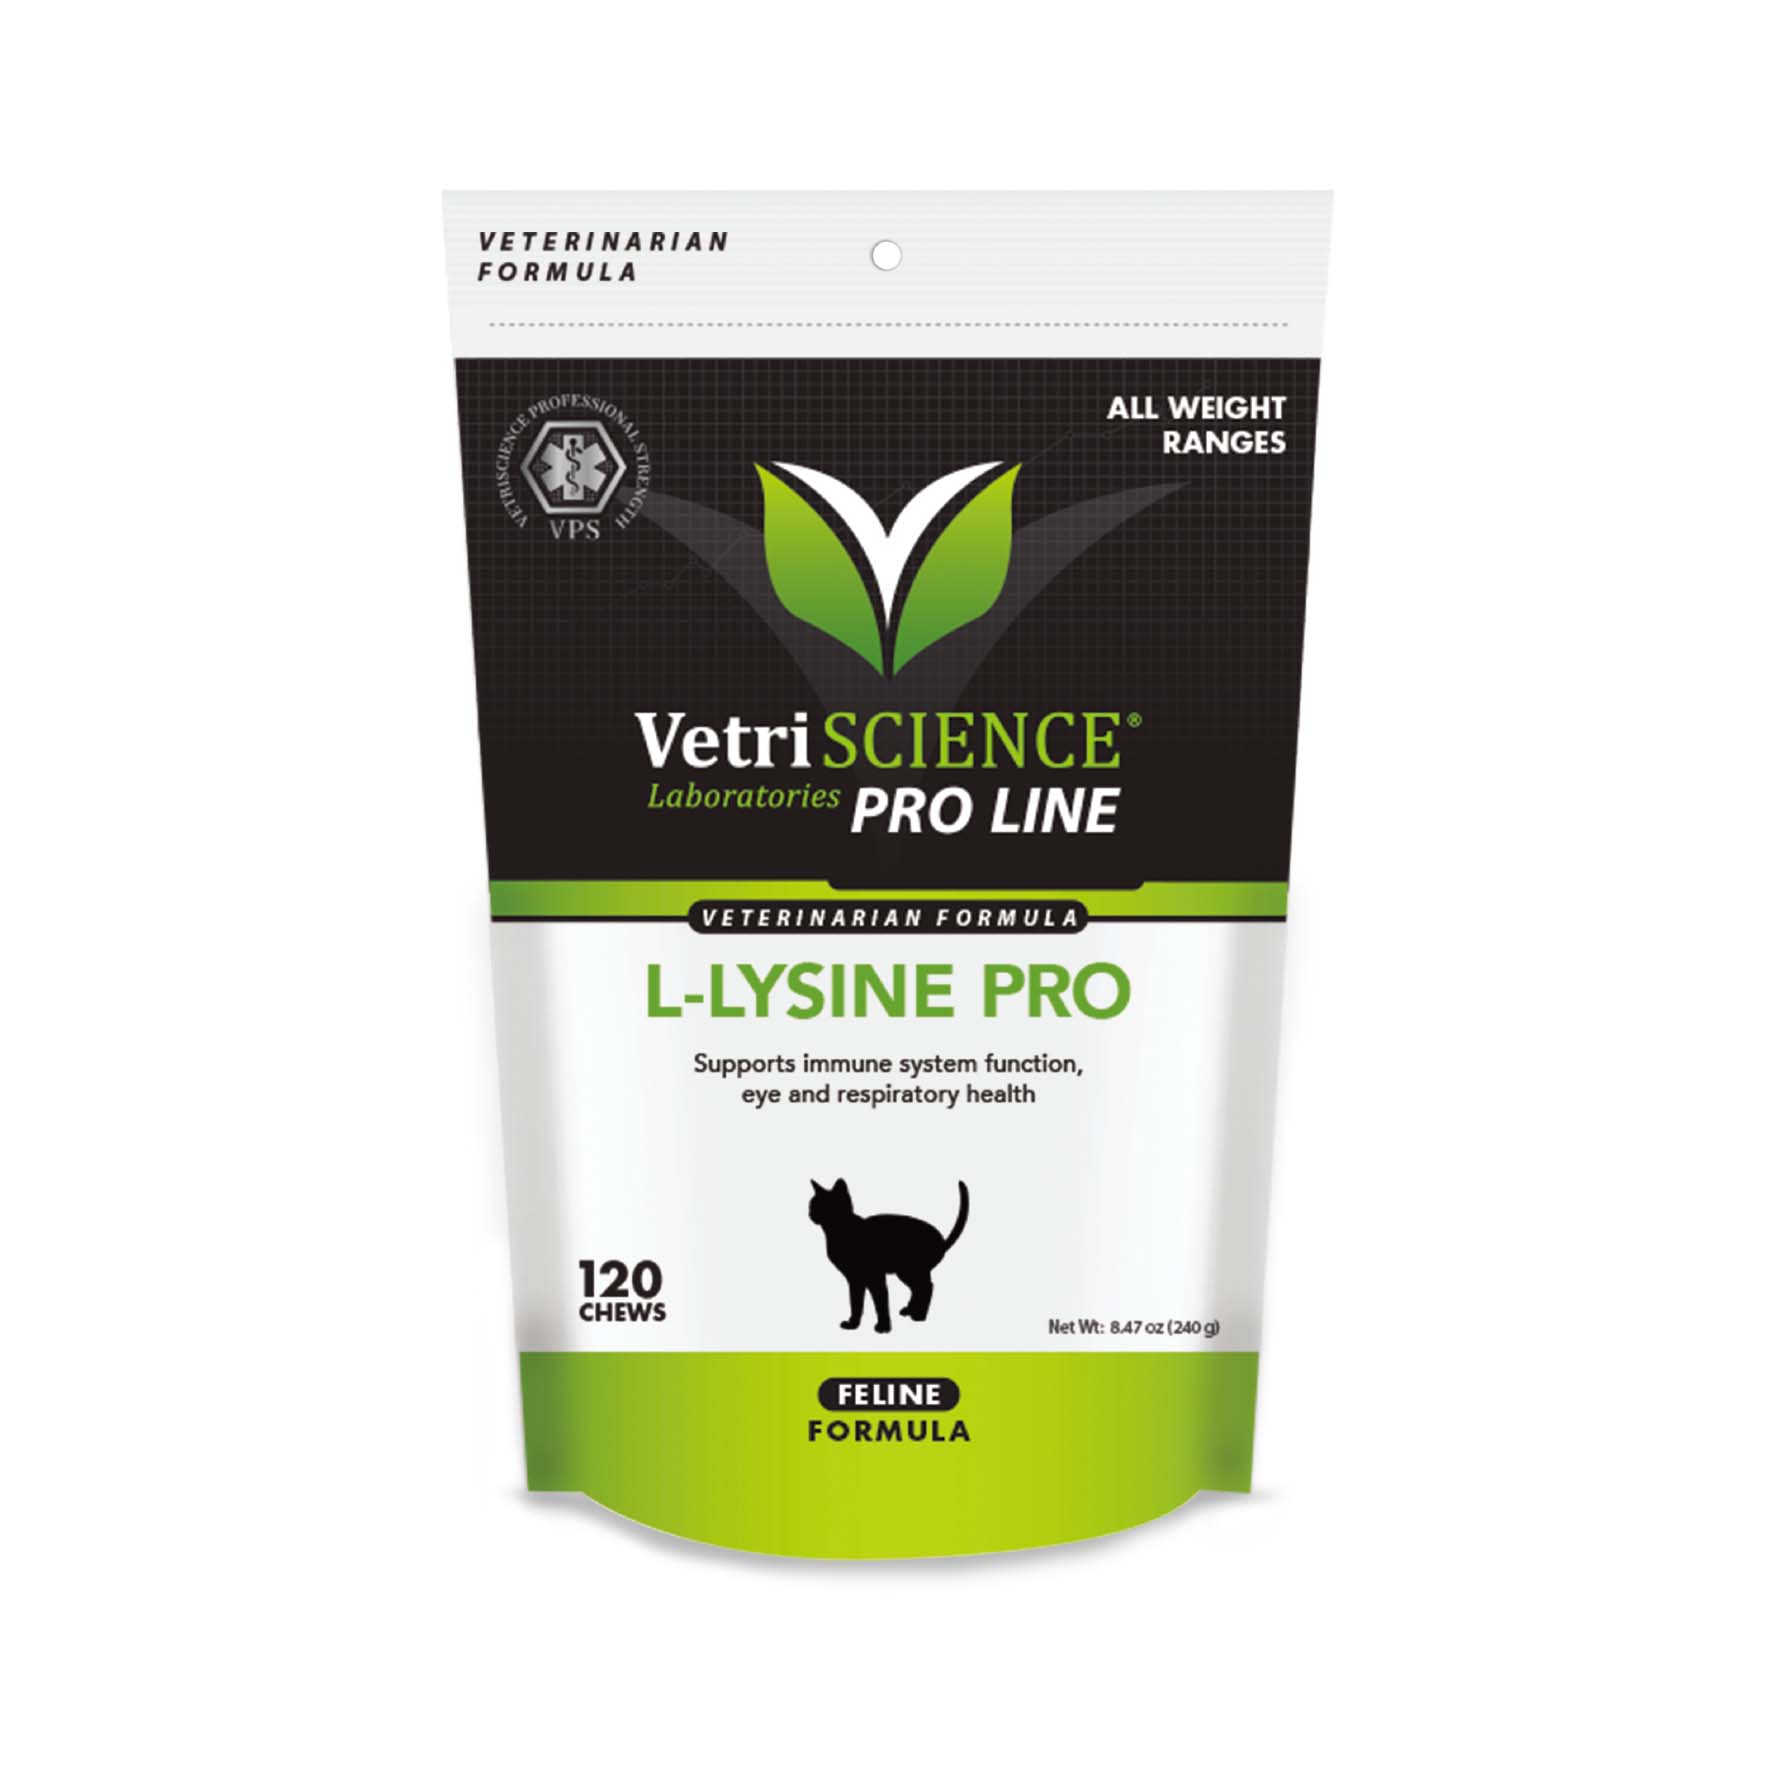 維多麗 左旋離胺酸 貓嚼錠(強效版)
Vetriscience L-Lysine Pro